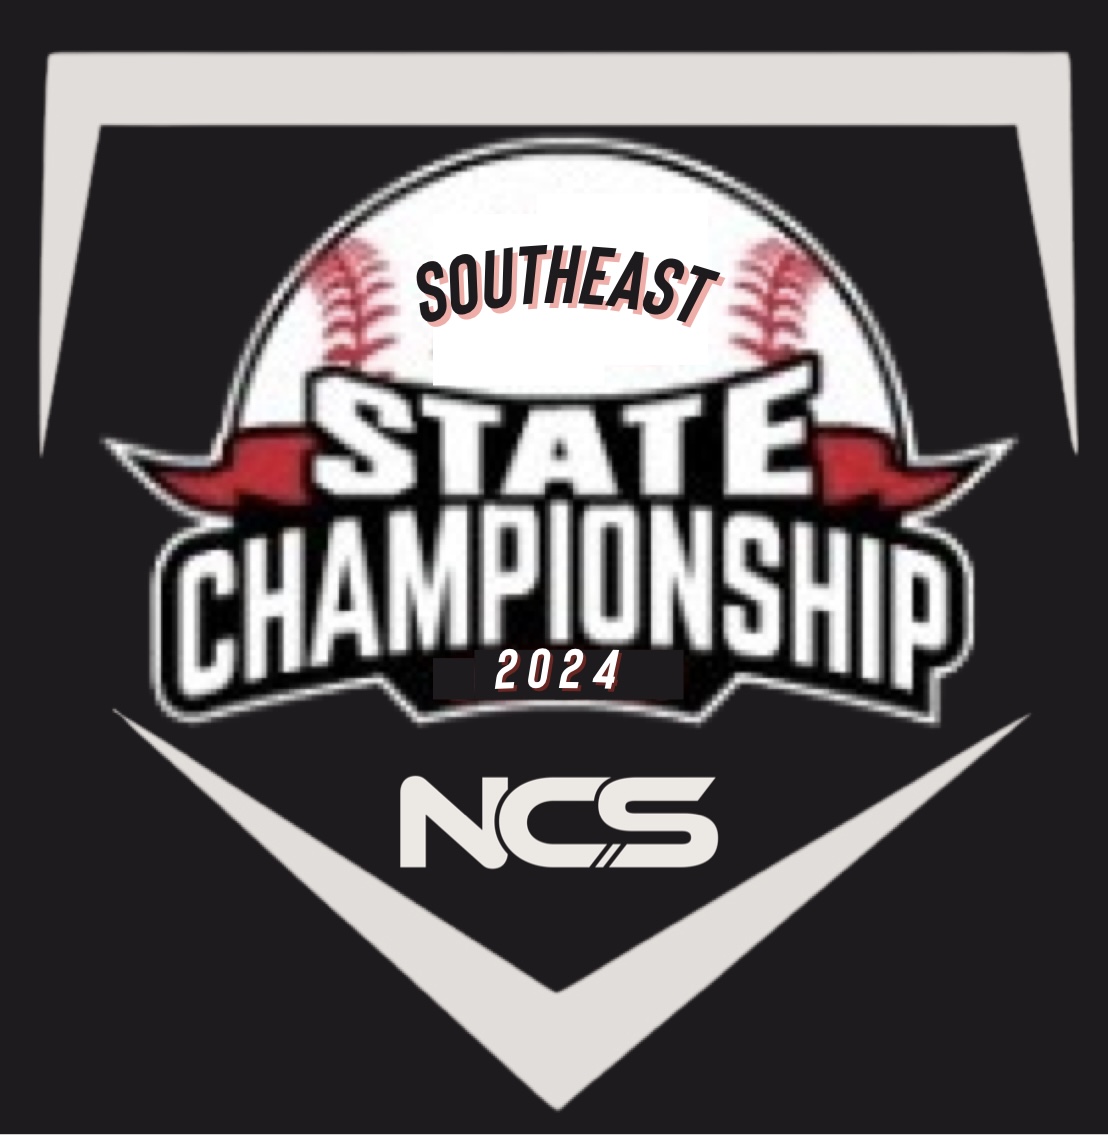 National Championship Sports Baseball 2024 NCS Southeast State